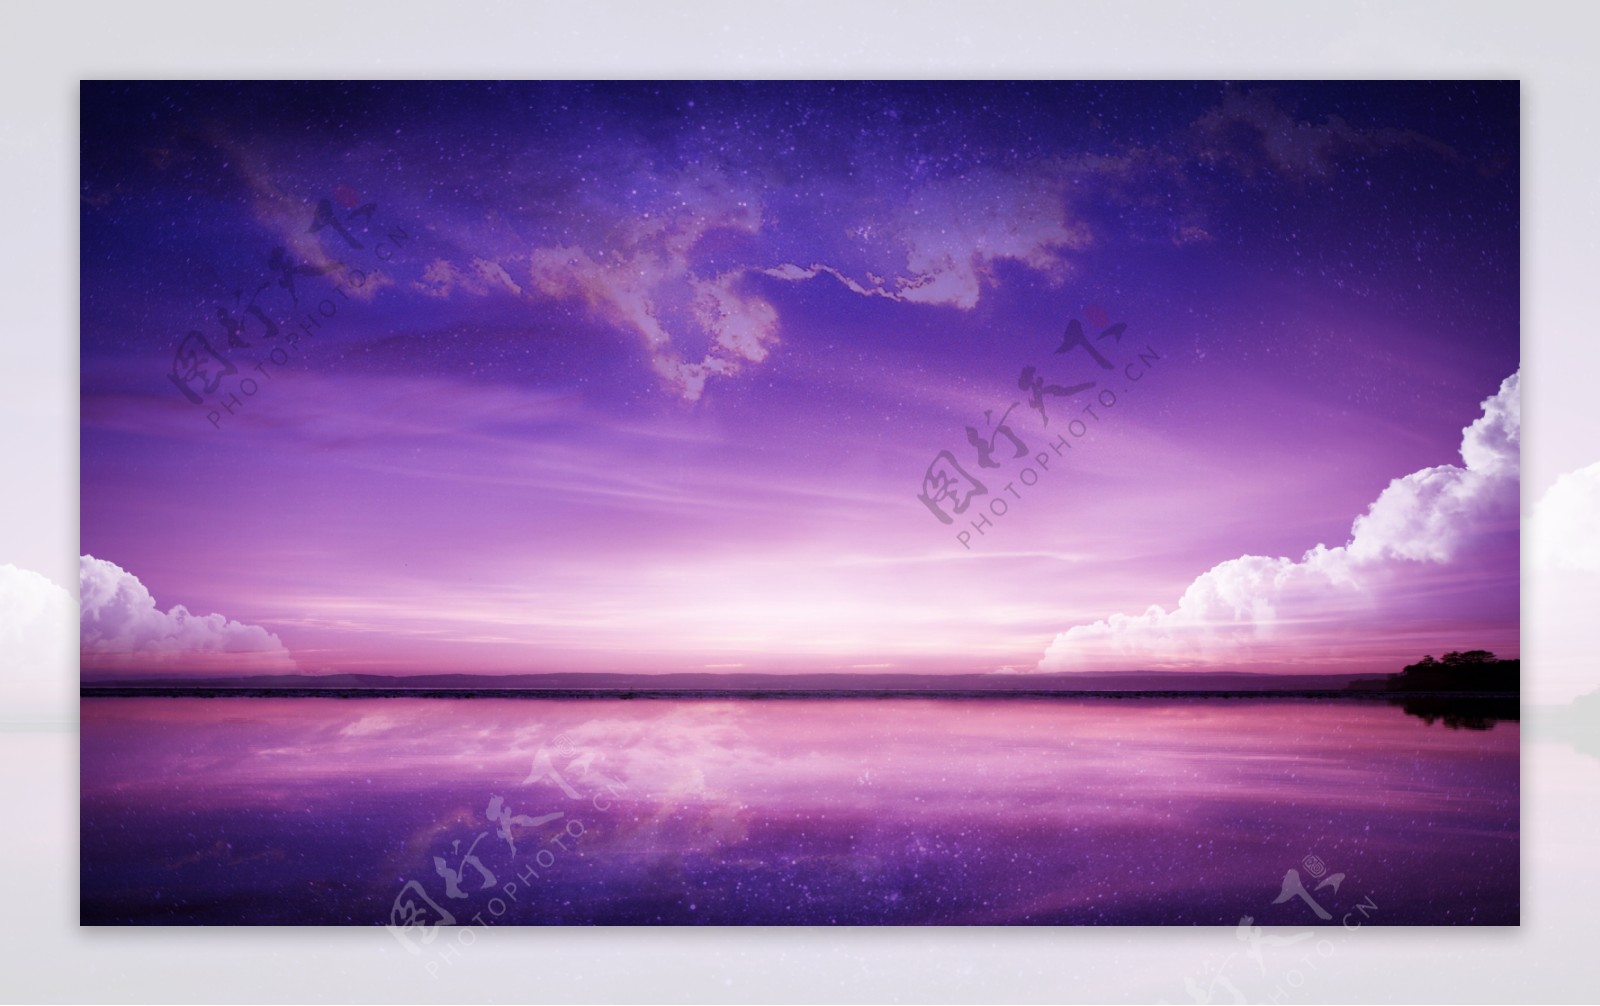 紫色星空背景图片